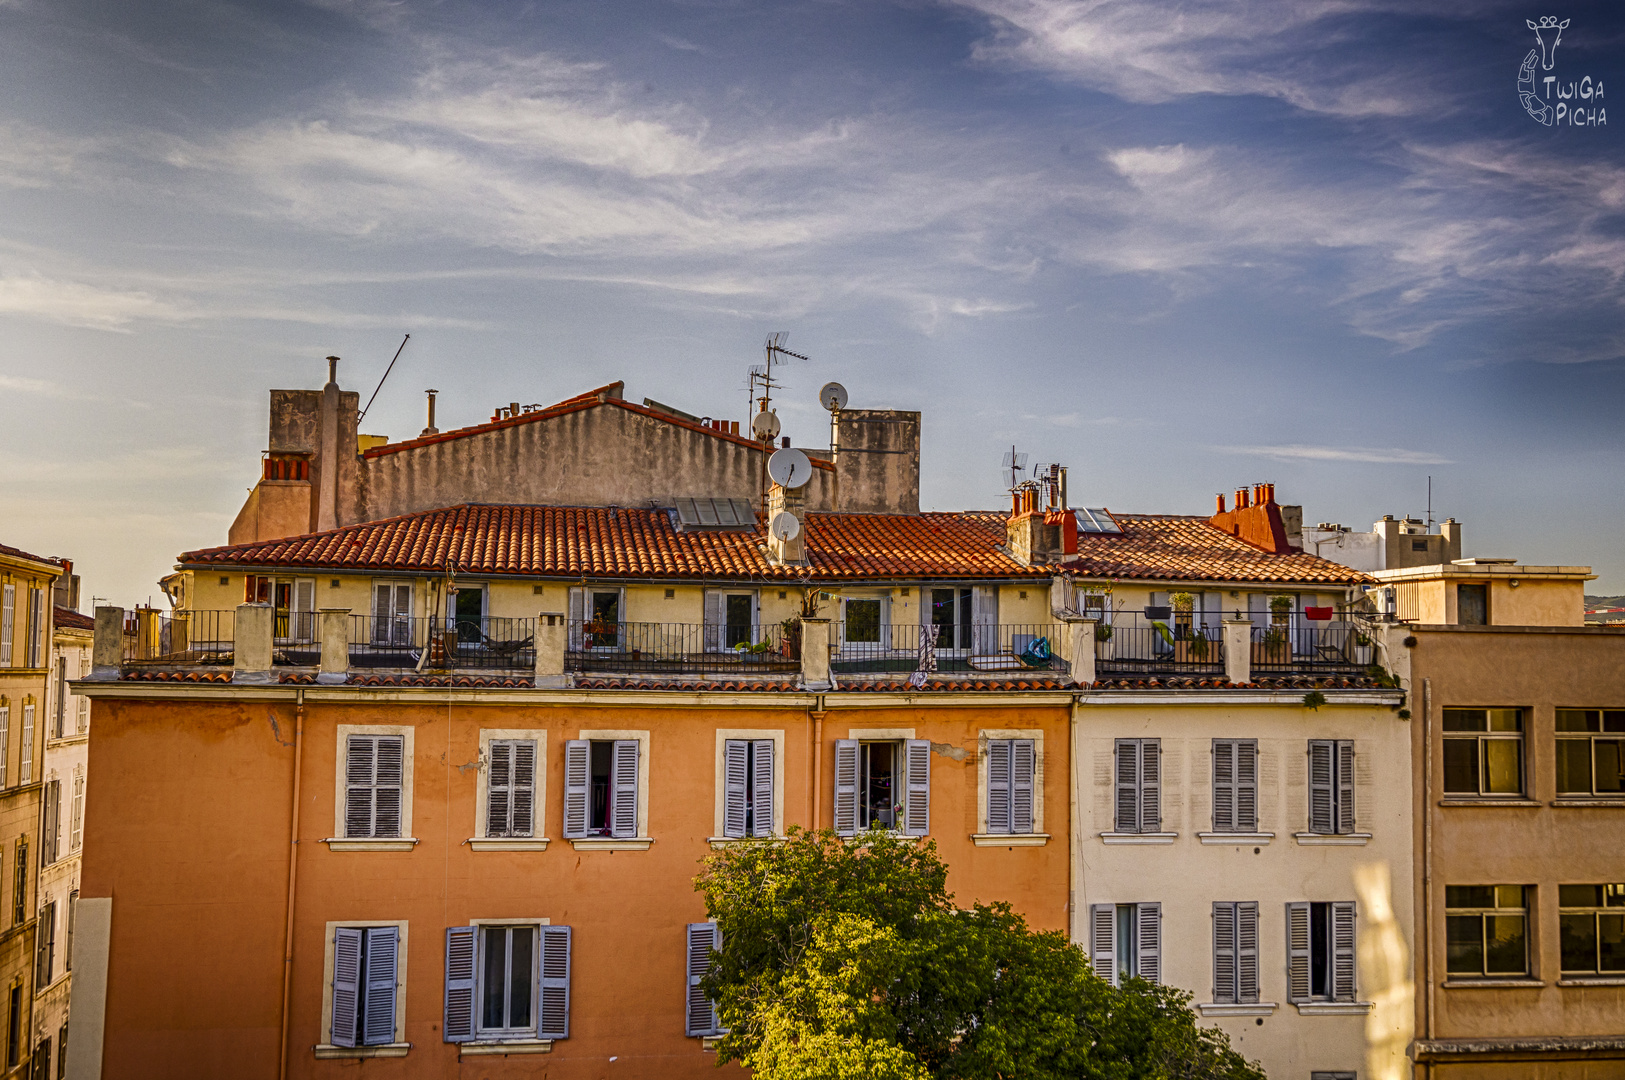 Marseille Impression - Wohnen unterm Himmel